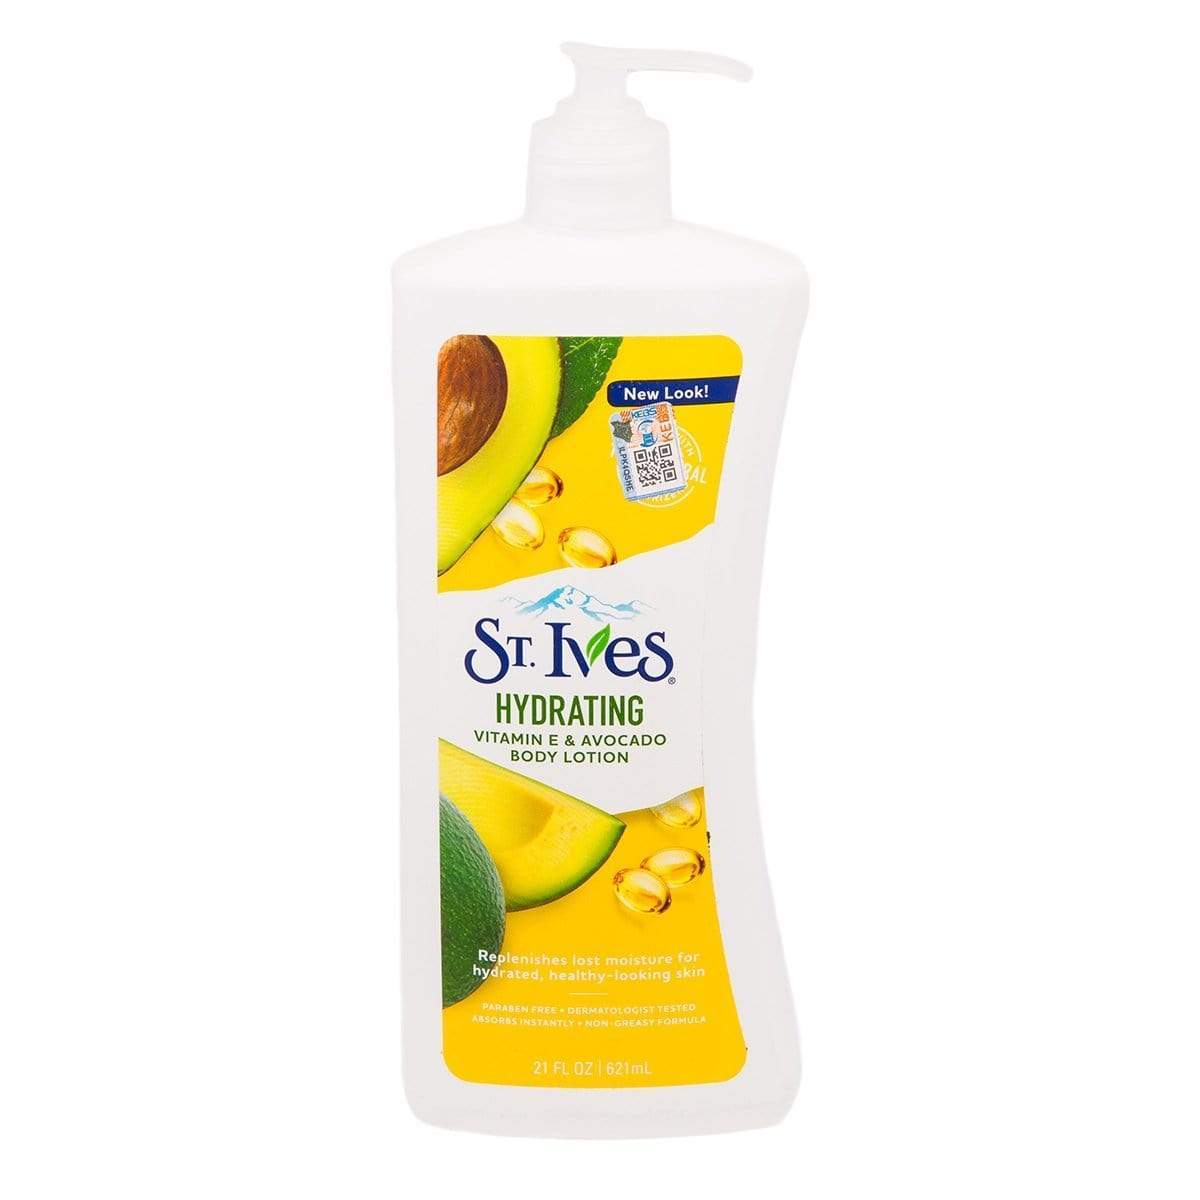 St. Ives hydrating vitamin E & avocado body lotion Minoustore